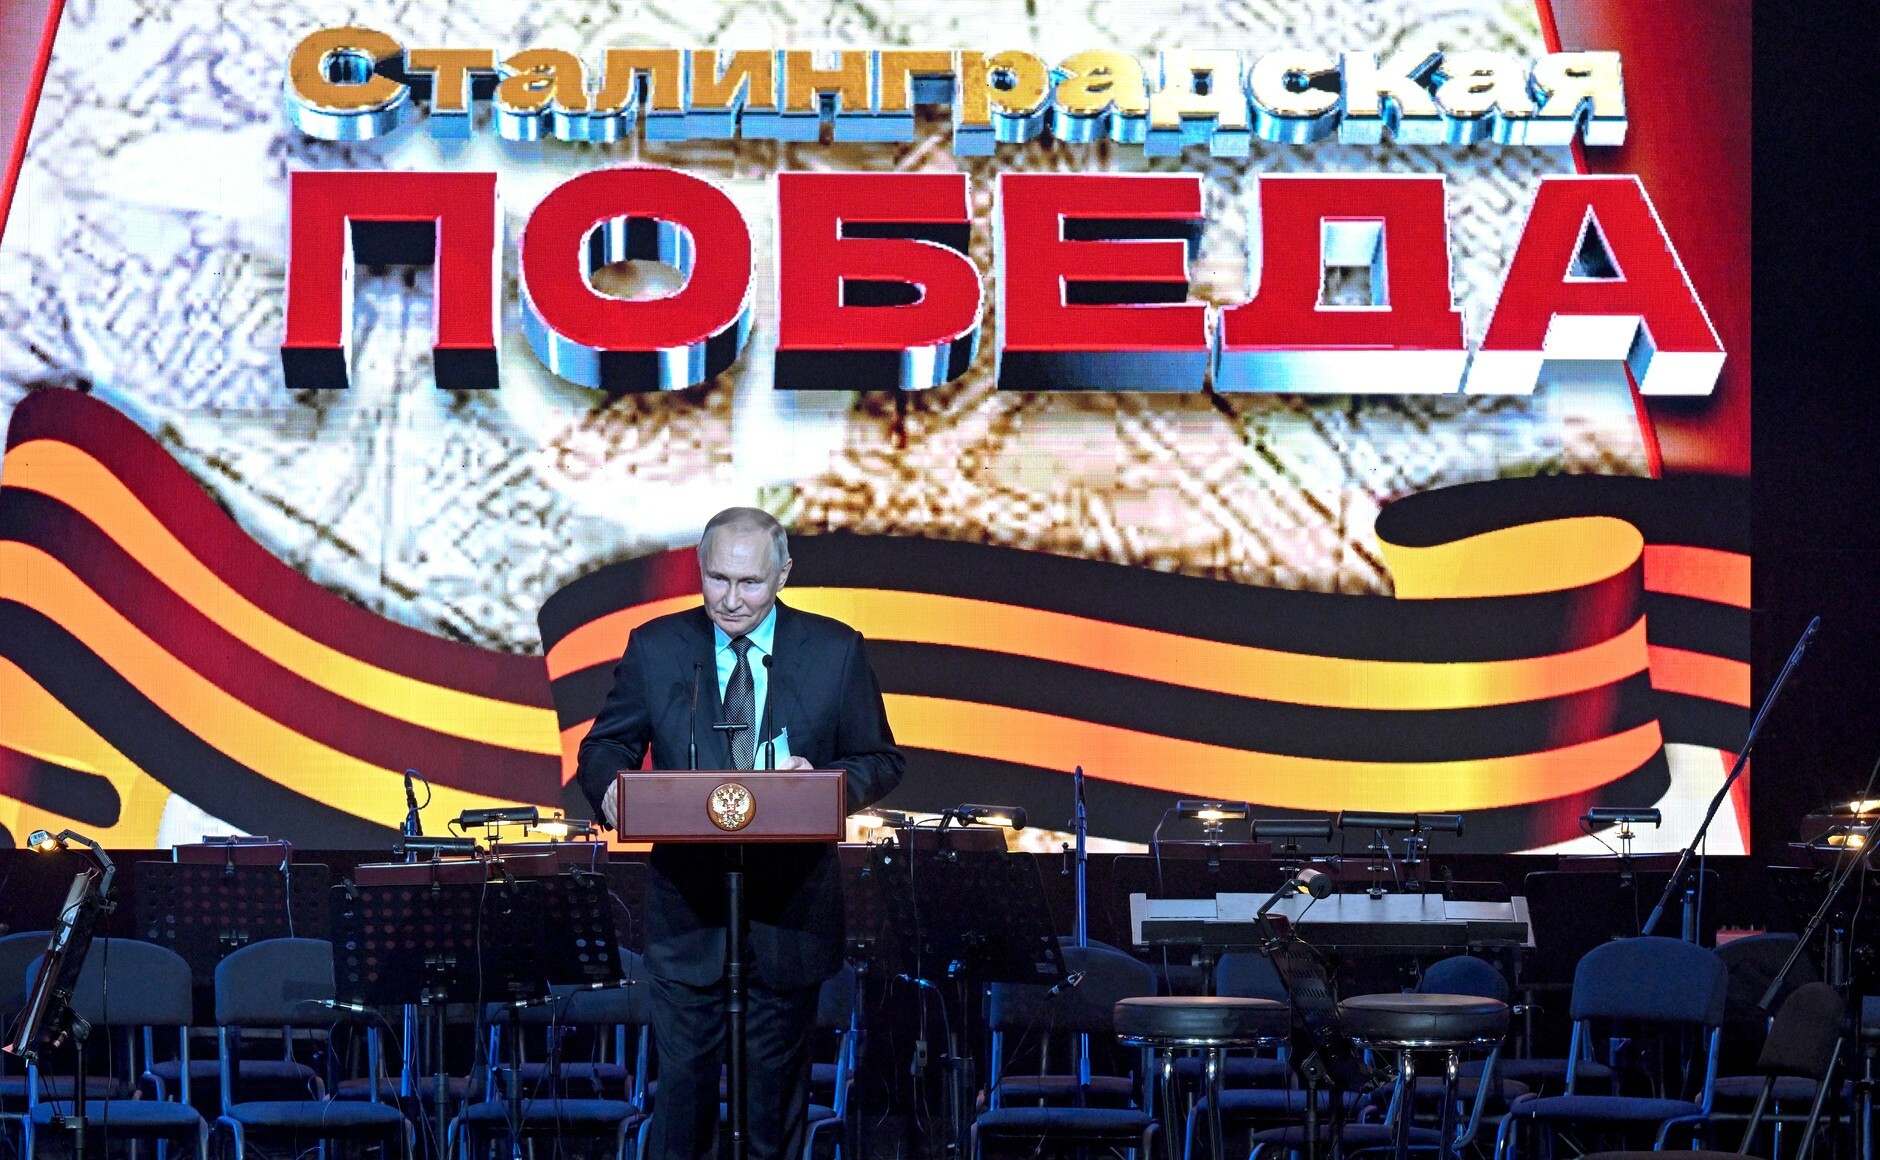 О вчерашней речи Владимира Путина к 80-летию окончания Сталинградской битвы